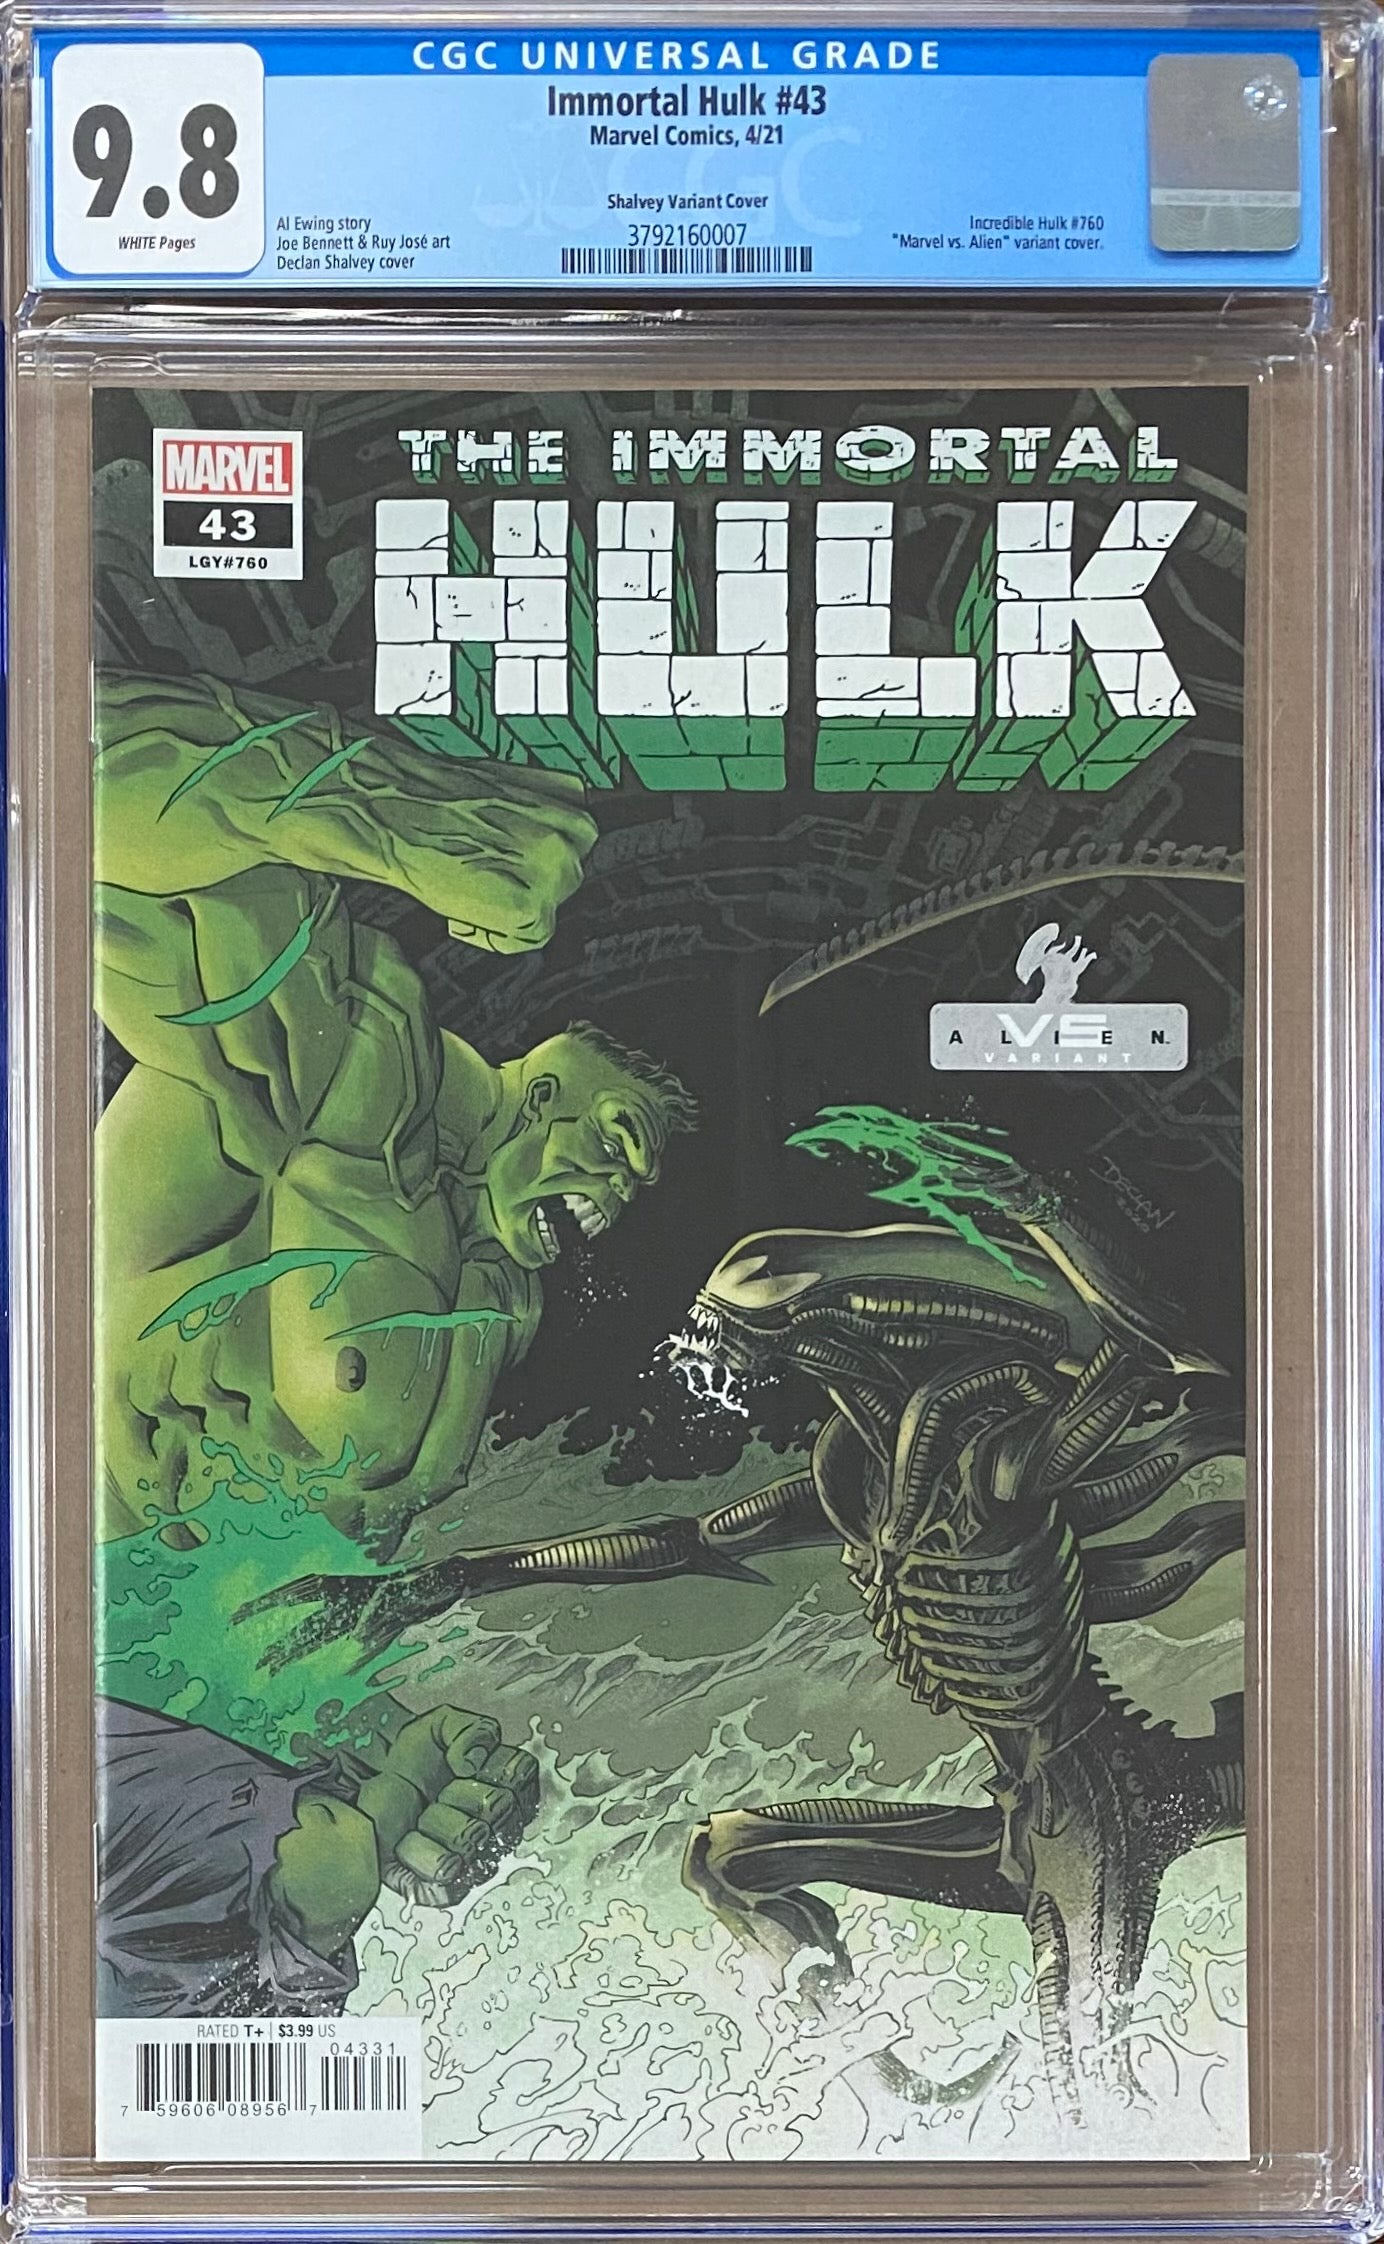 Immortal Hulk #43 "Marvel vs. Aliens" Recalled Edition Variant CGC 9.8